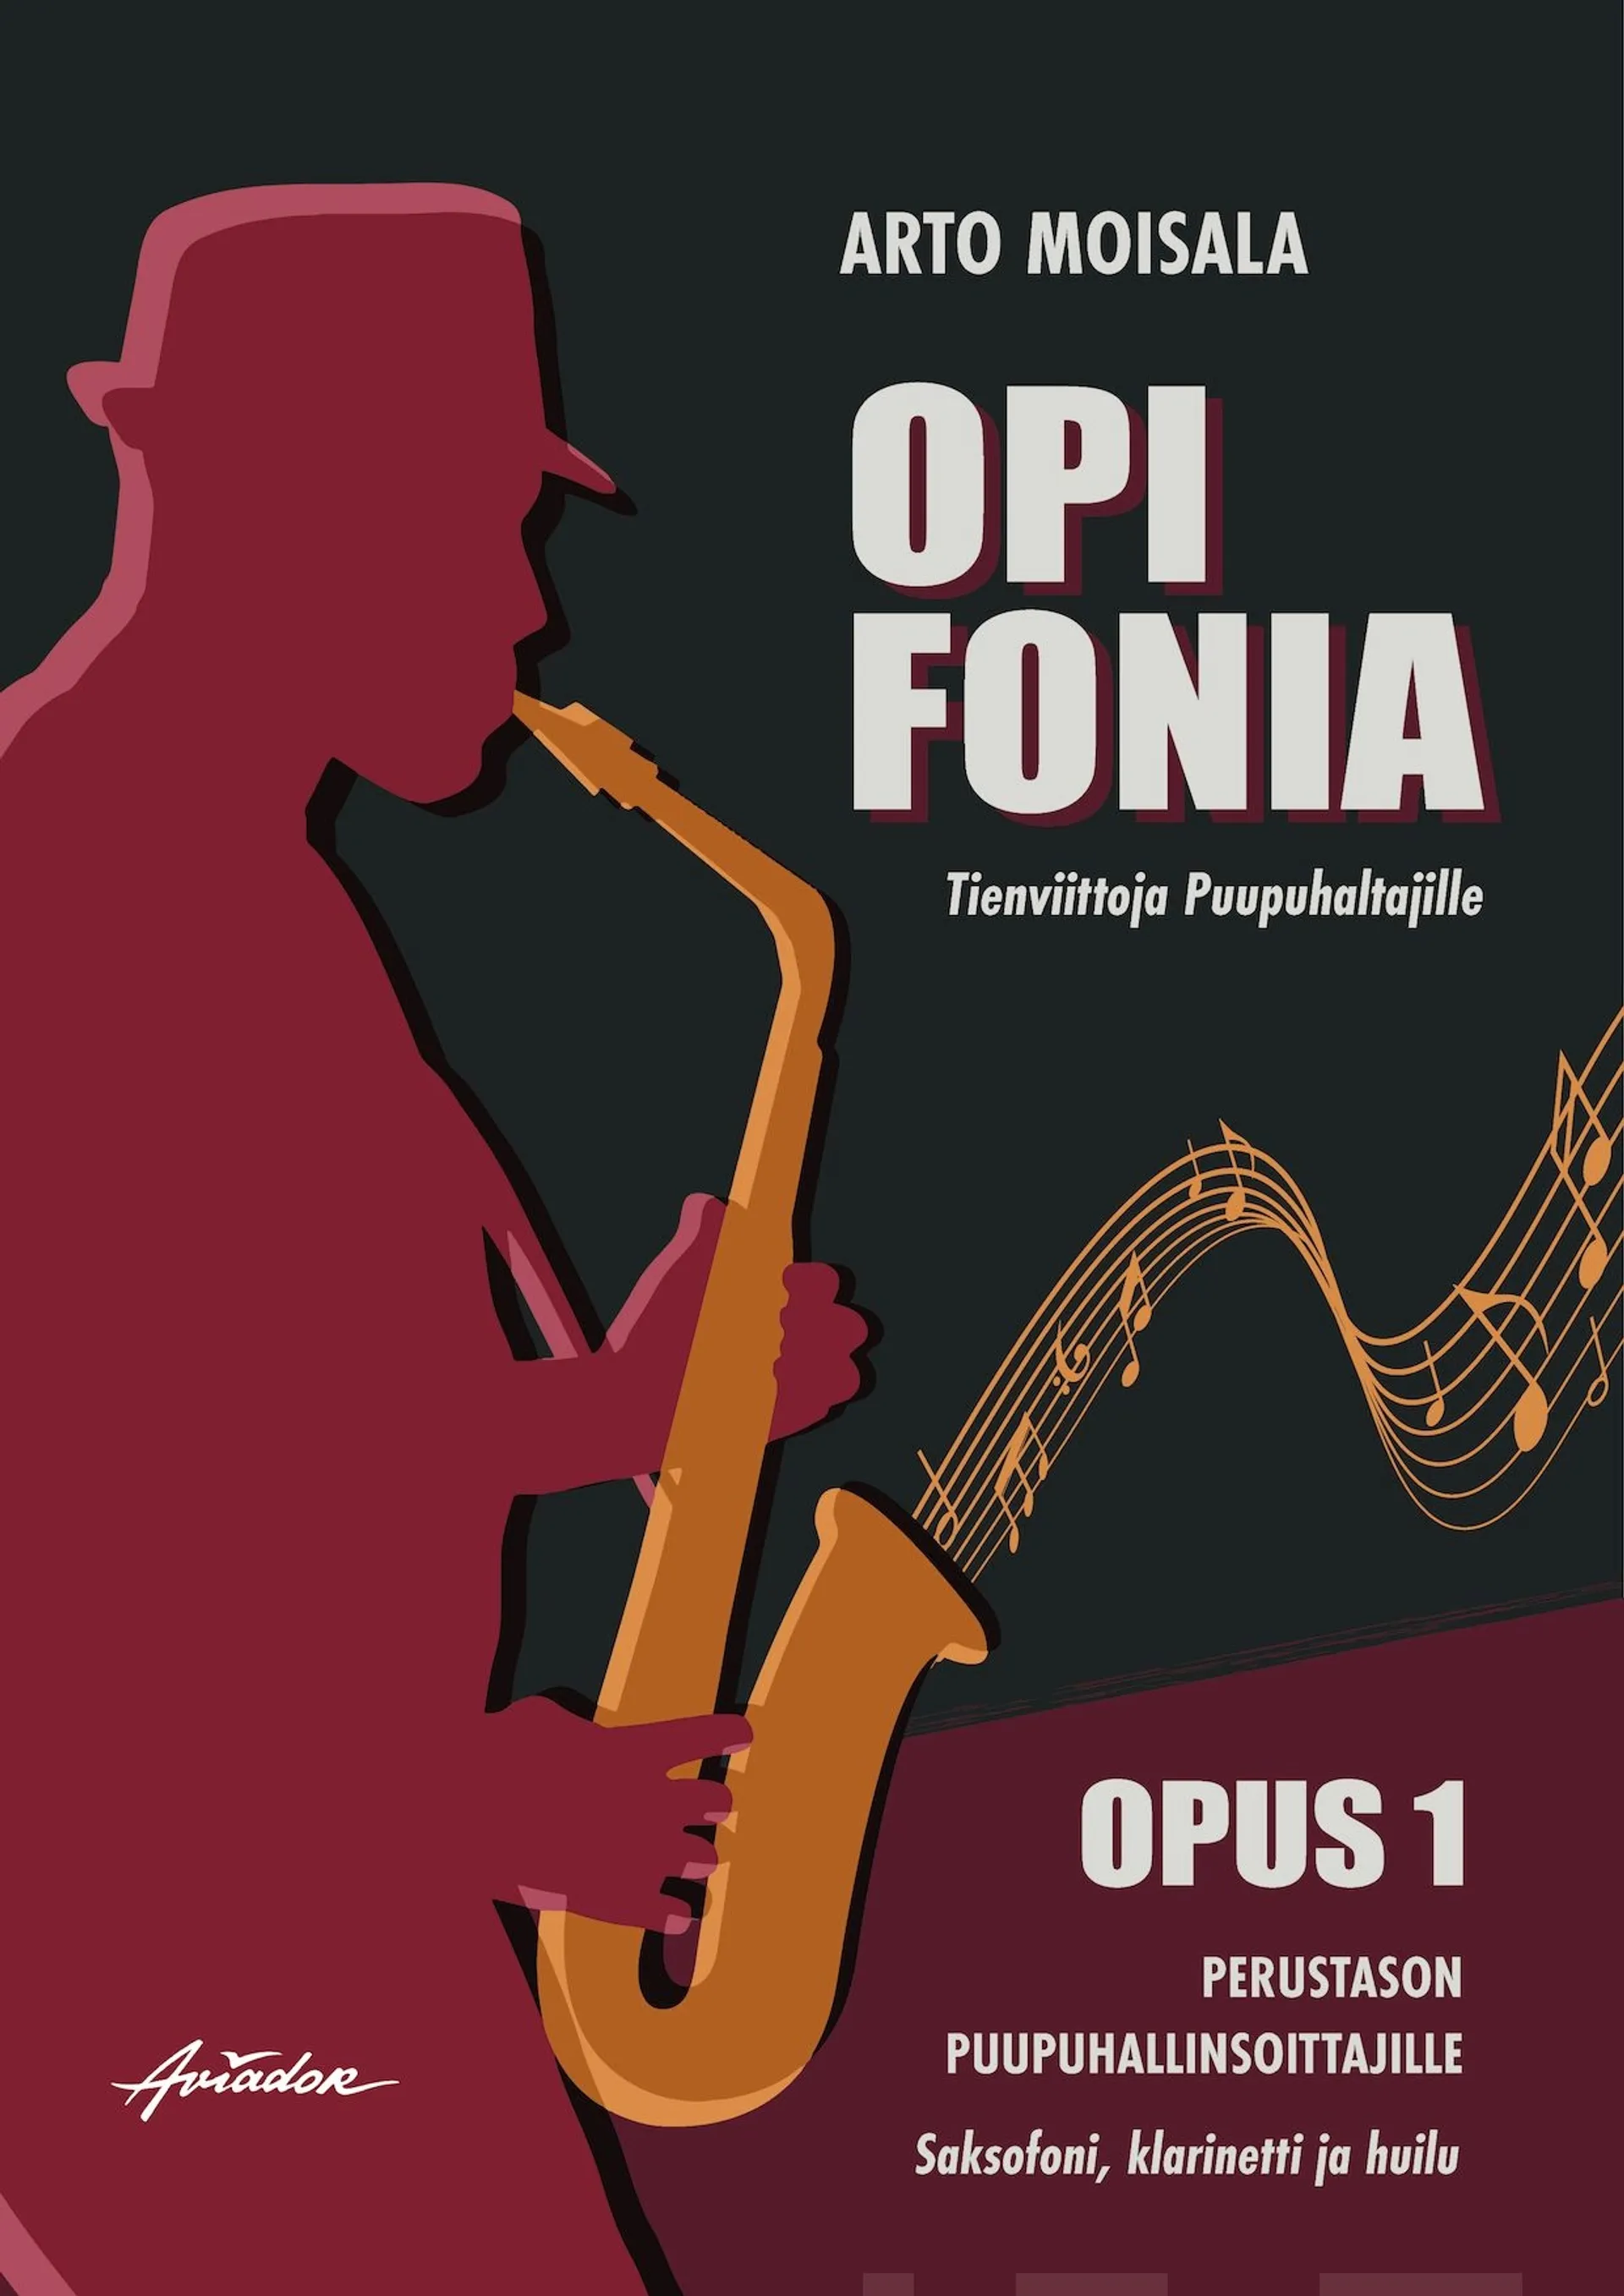 Moisala, Opi fonia - Tienviittoja puupuhaltajille : Opus 1 : Perustason puupuhallinsoittajille : Saksofoni, klarinetti ja huilu